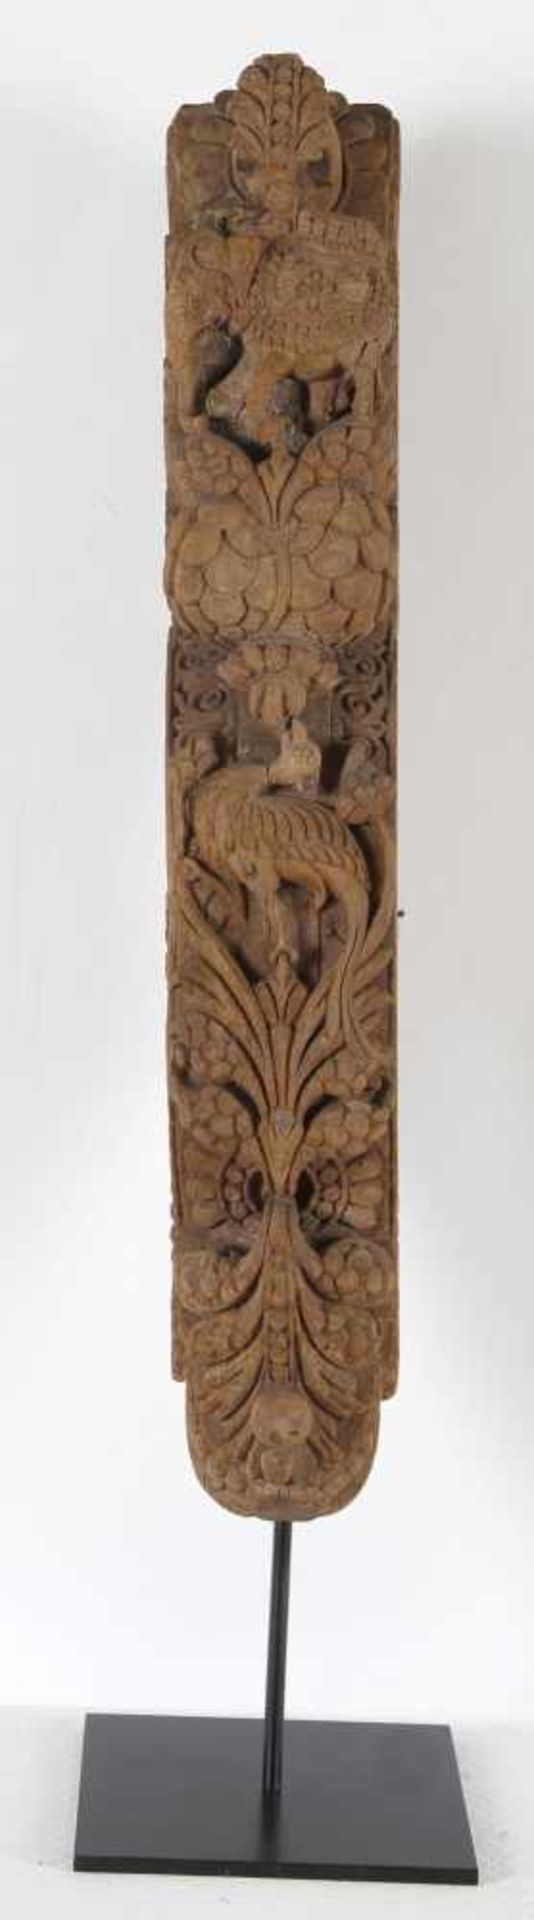 Beschnitzte Gebälkstrebe, Indien, wohl Rajastan, 19. - A. 20. Jh.exotisches Hartholz mit reicher - Image 2 of 2